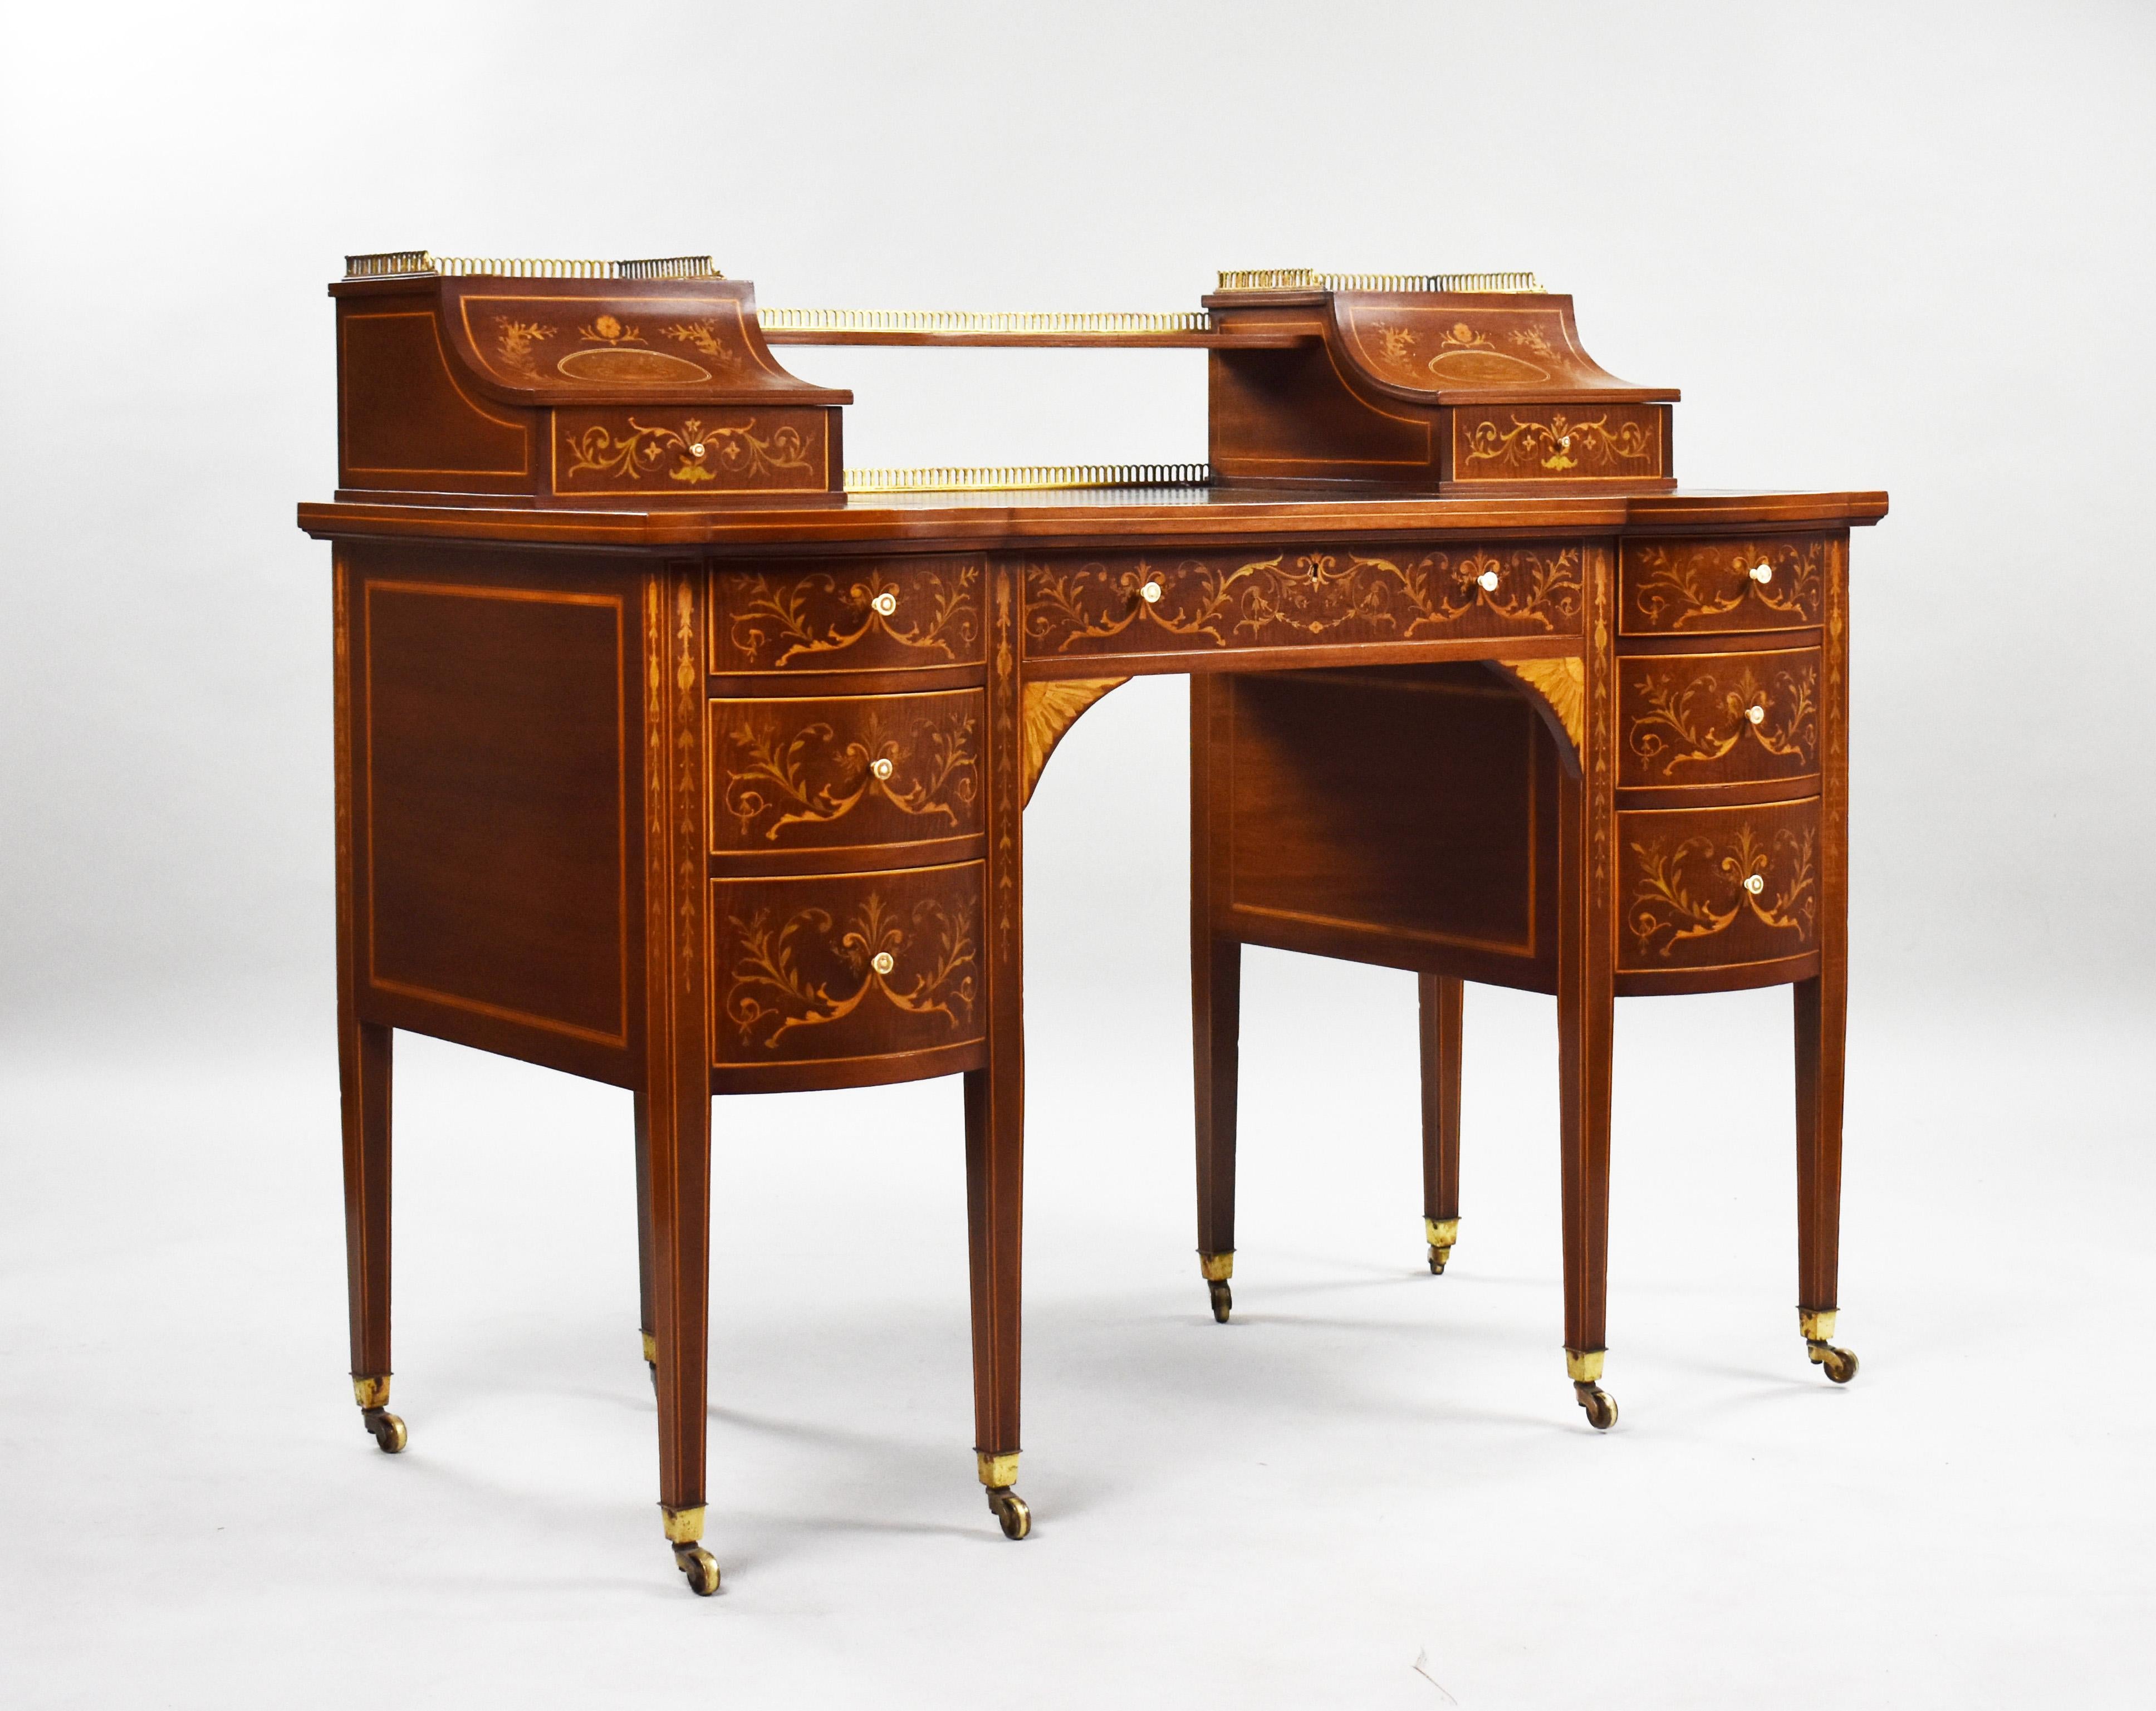 Zum Verkauf angeboten wird ein hochwertiger viktorianischer Sheraton-Revival-Schreibtisch mit Intarsien aus Carlton-Holz, der Edwards & Roberts zugeschrieben wird. Die Platte mit eingelegten Intarsienschachteln über einzelnen Schubladen flankiert